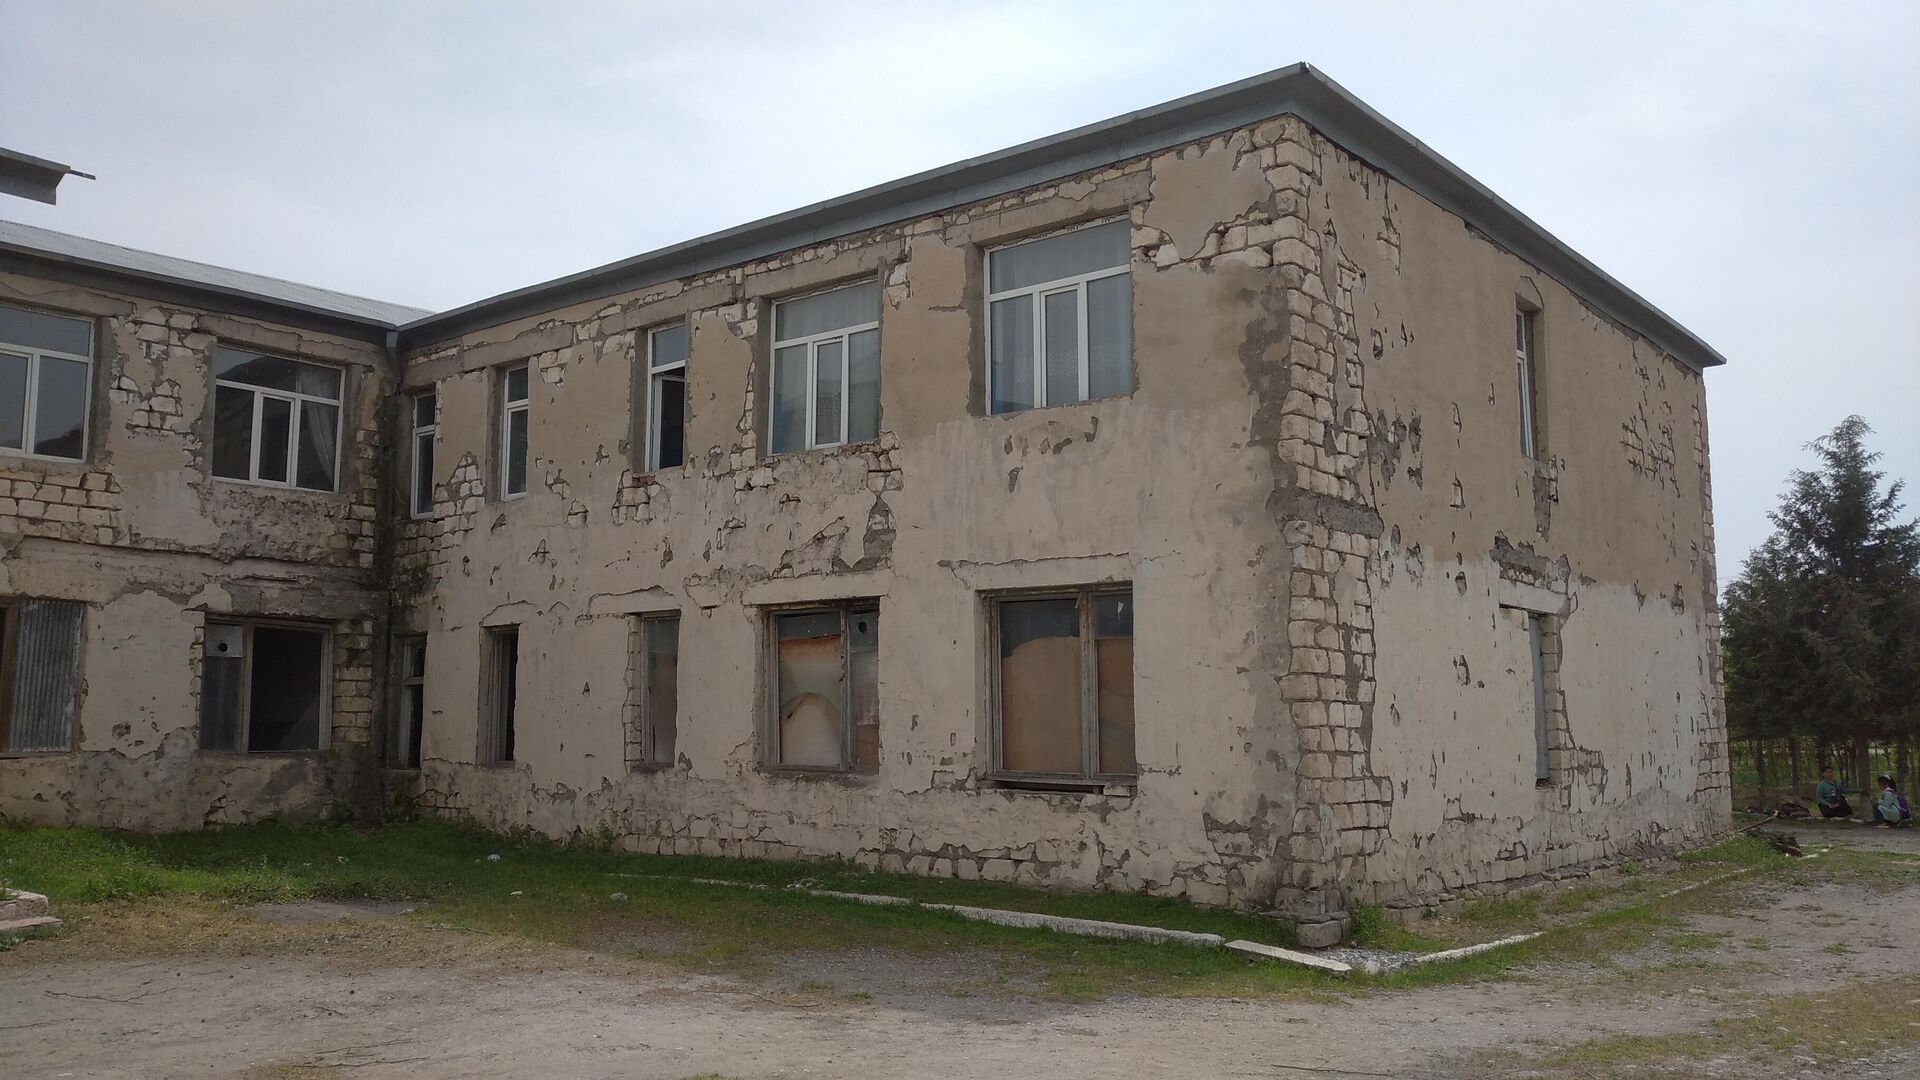 Bərdənin Mehdili kəndində dağılmış məktəbin ərazisində - Sputnik Azərbaycan, 1920, 21.04.2022